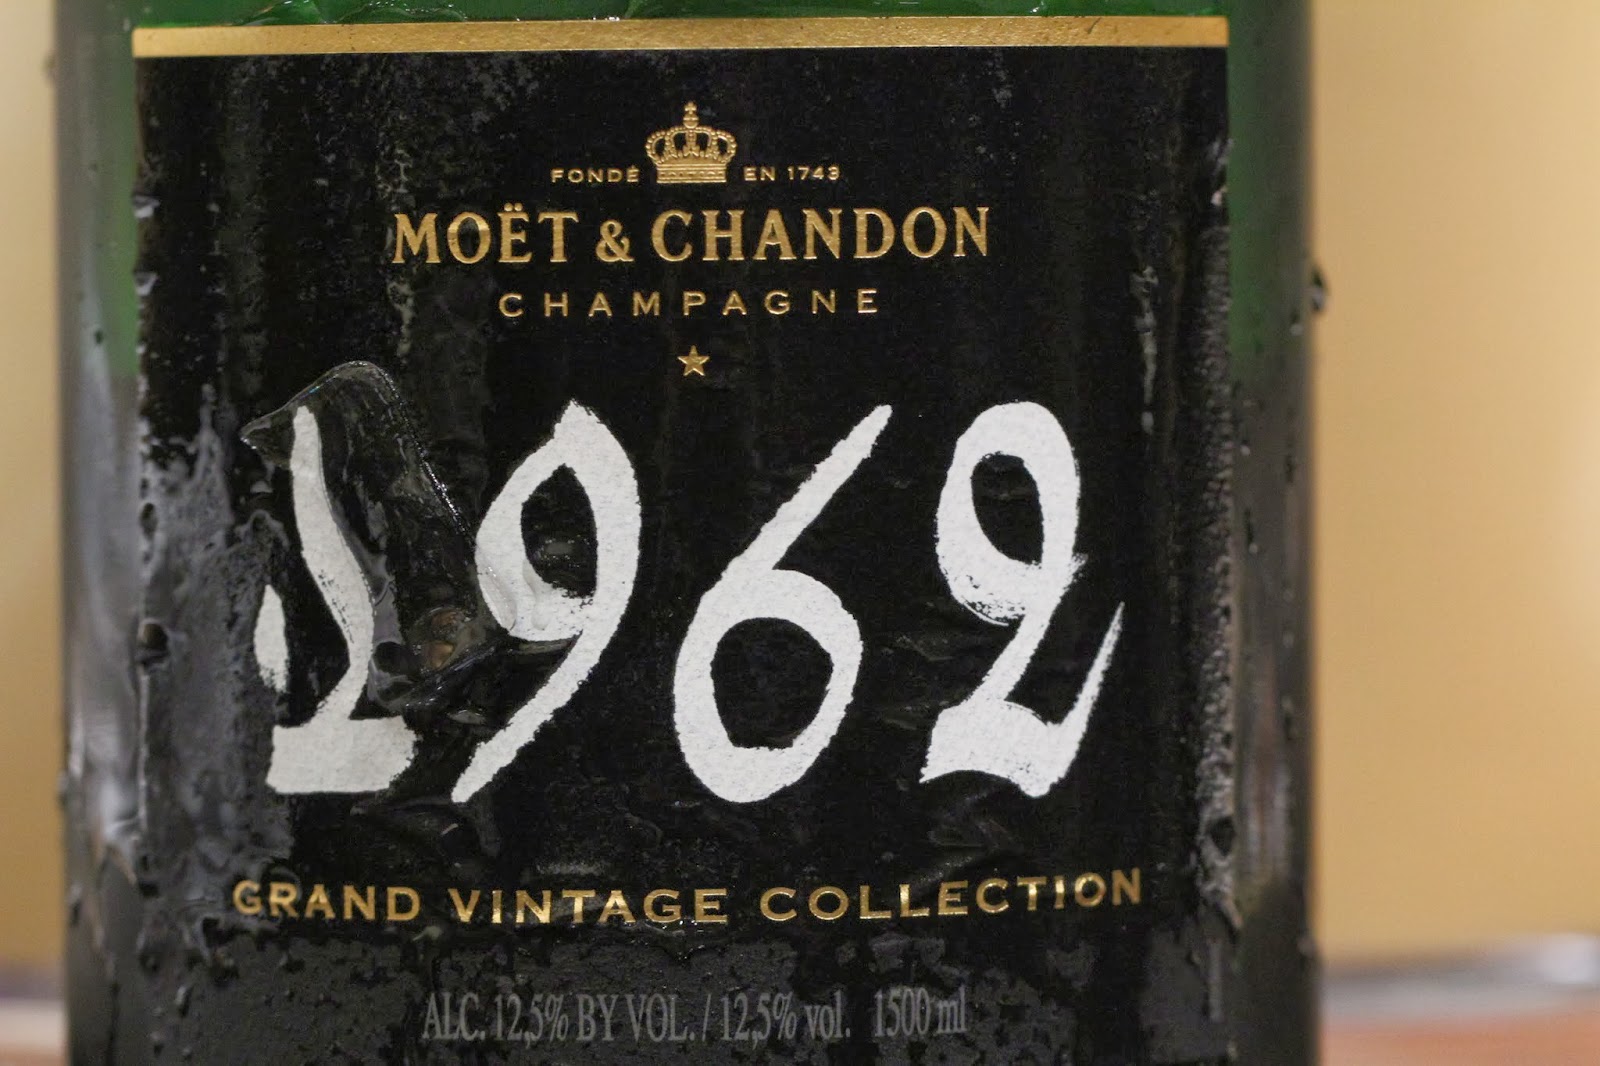 Champagne Grand Vintage 2003 Flute Set Moet & Chandon